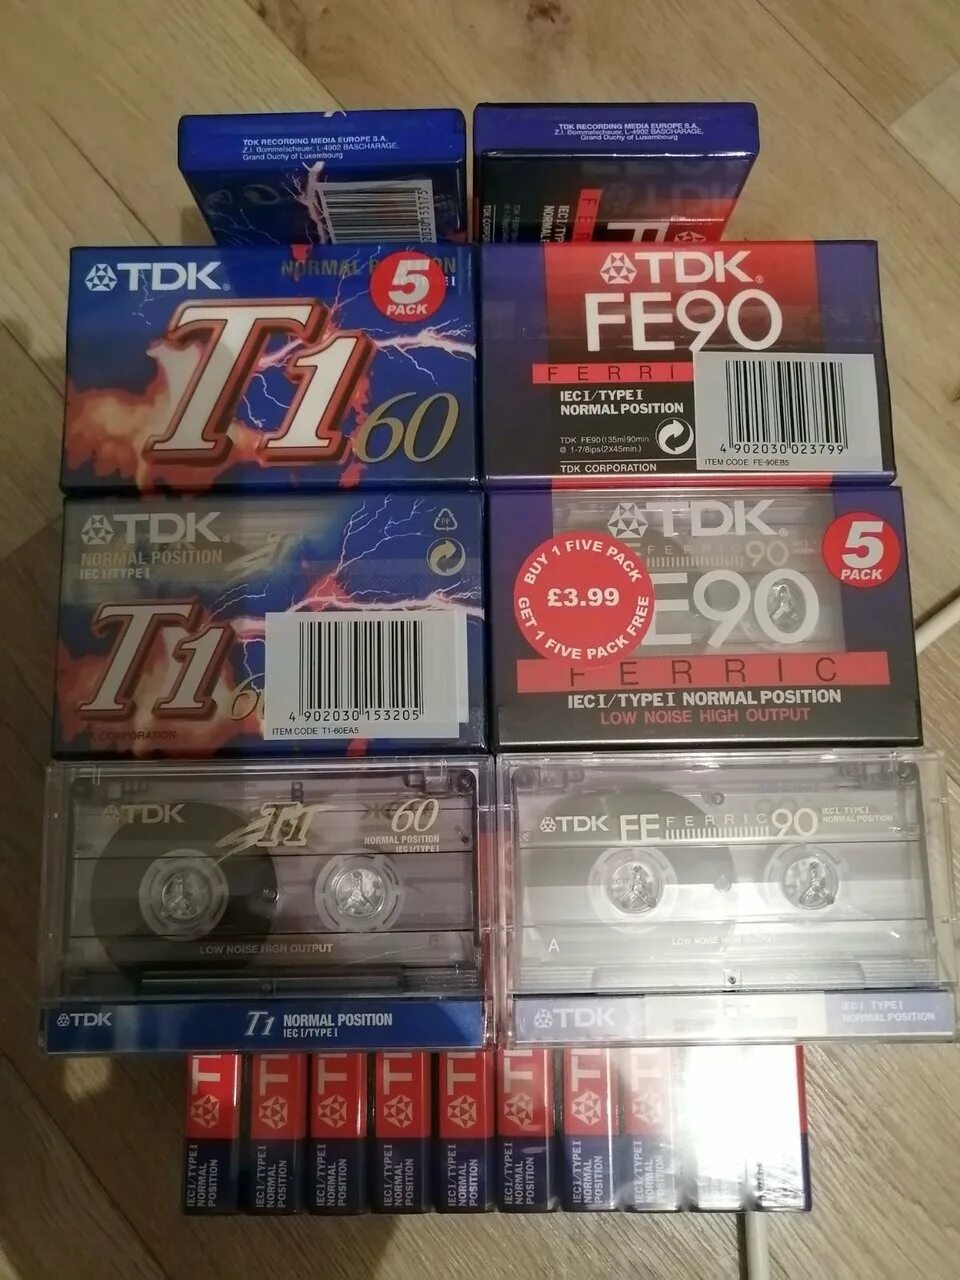 15 кассет. Аудиокассеты TDK t1 90. Аудиокассета TDK fe90 ferric. TDK t1 60. ТДК Фе 60 кассета.